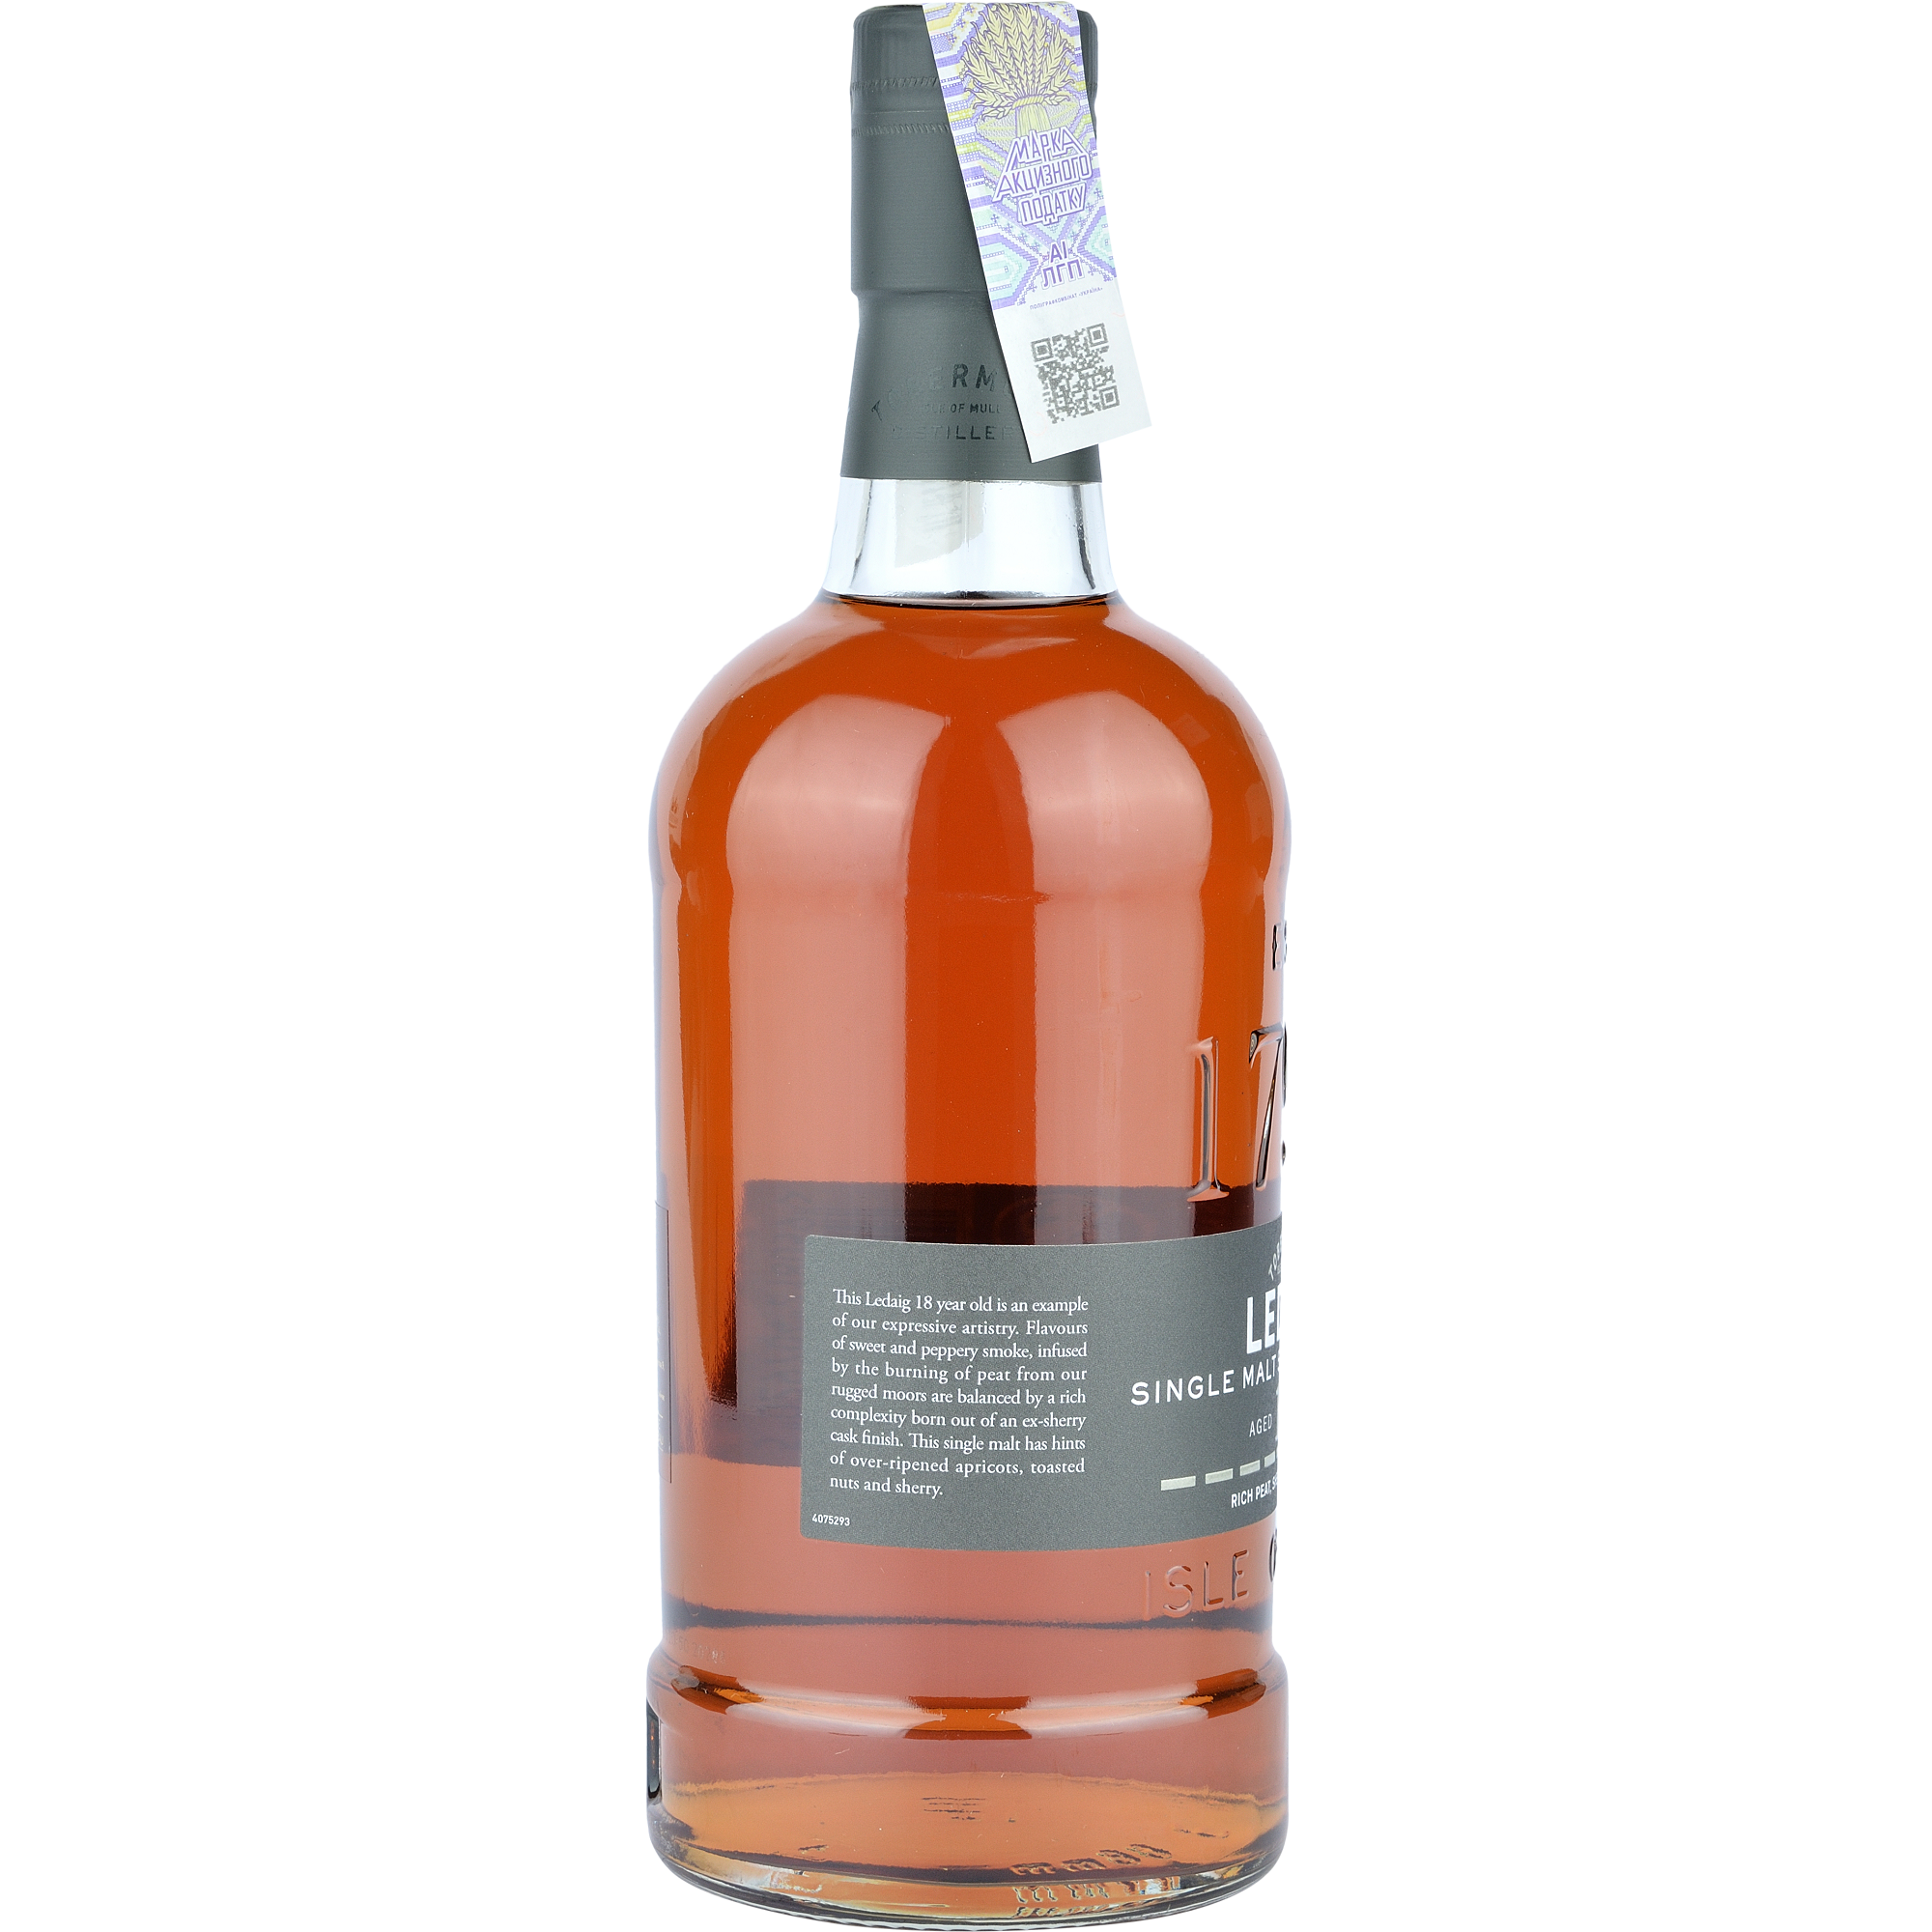 Віскі Ledaig Single Malt Scotch Whisky 18 yo, в подарунковому пакуванні, 46,3%, 0,7 л - фото 2